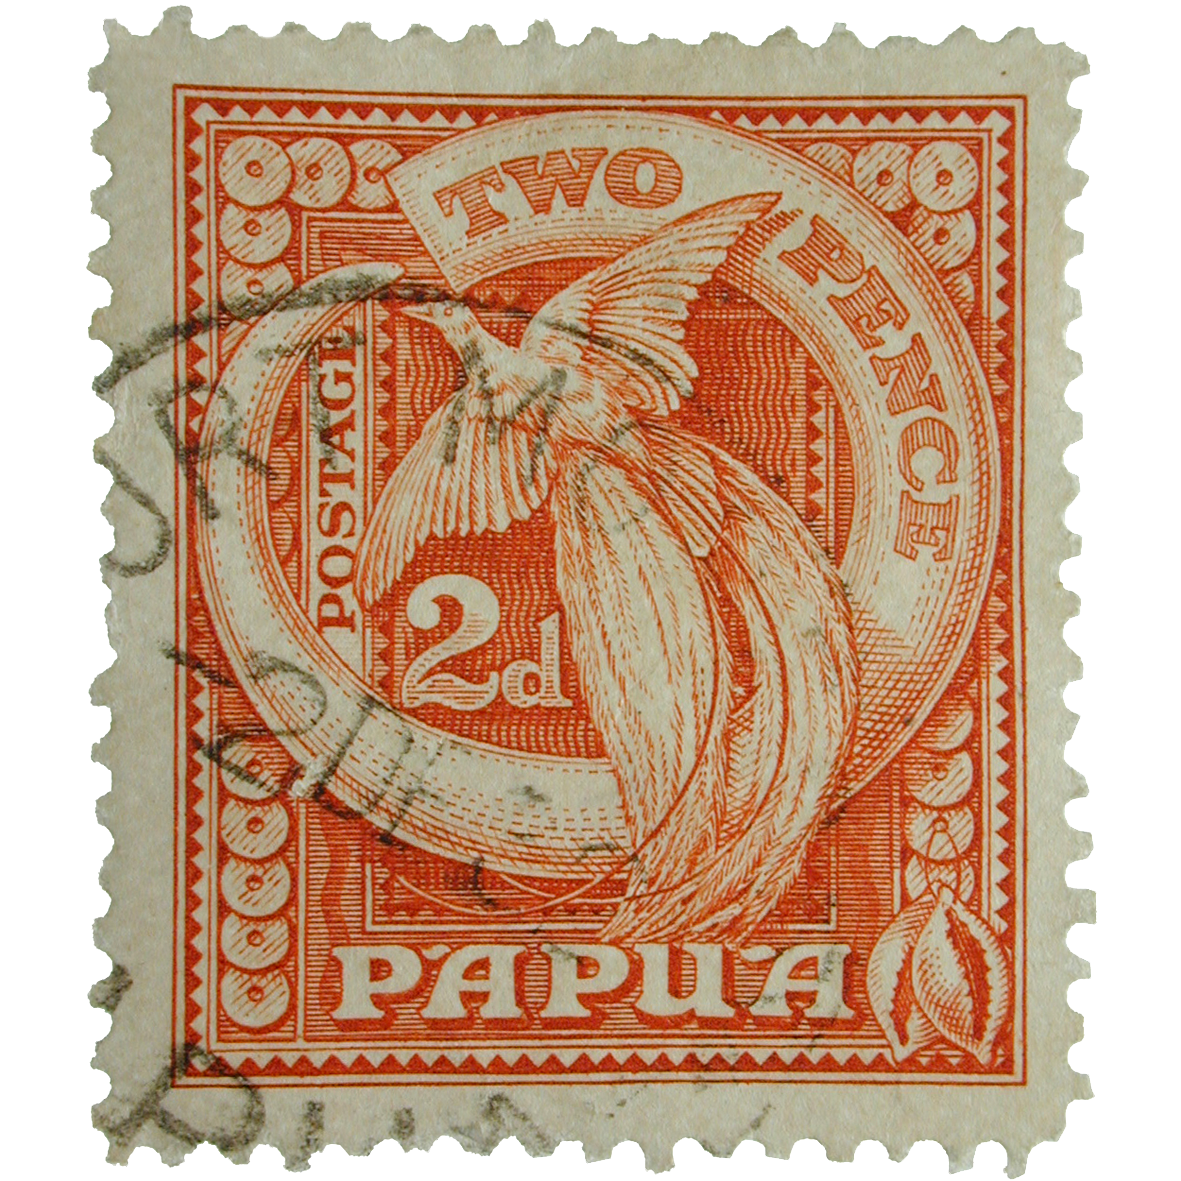 Sello postal PNG